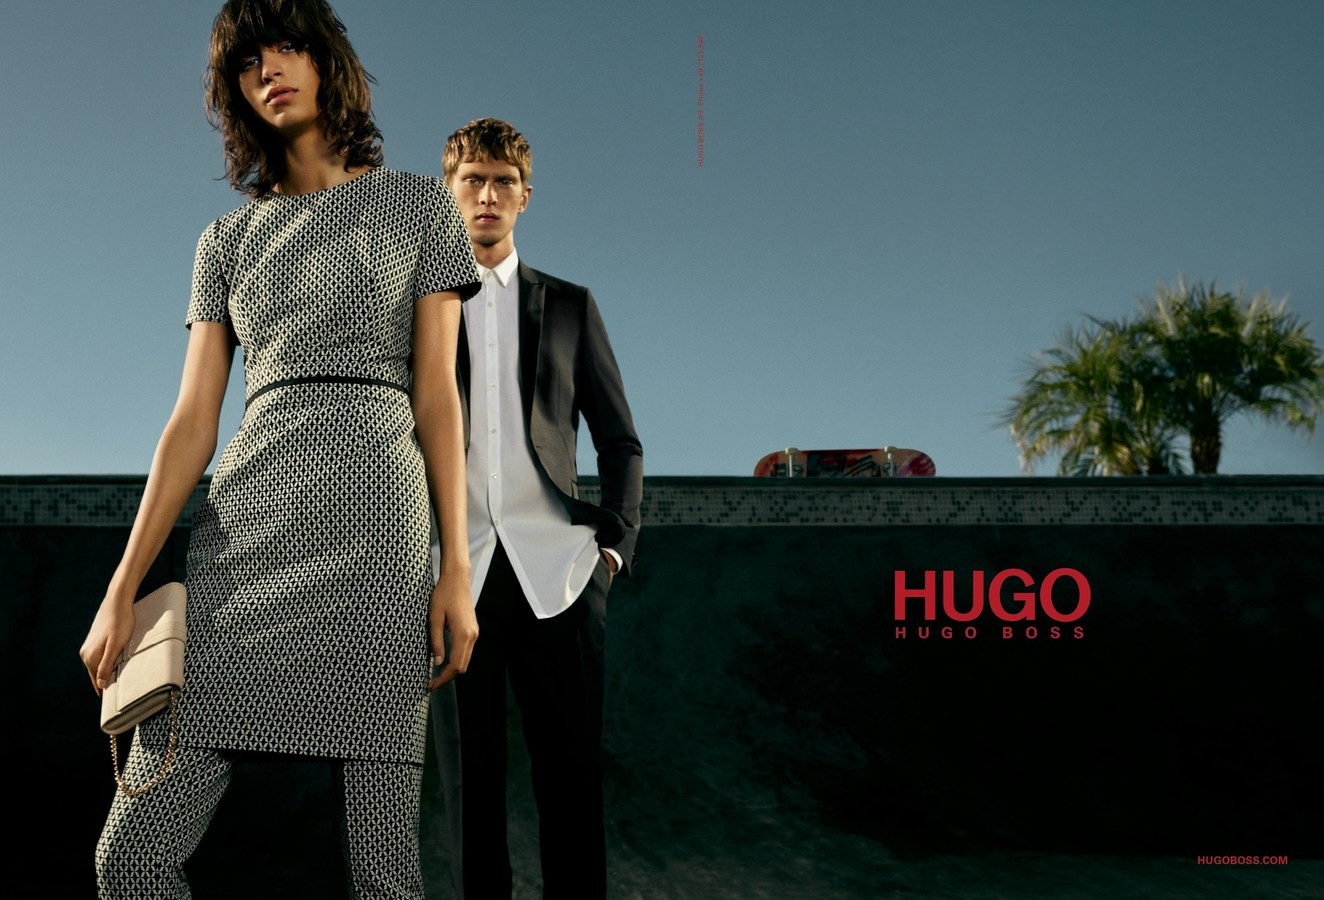 Включи hugo. Хьюго босс. Hugo Boss 6 campaign. Hugo Boss campaign. Hugo – Hugo Boss 1997.